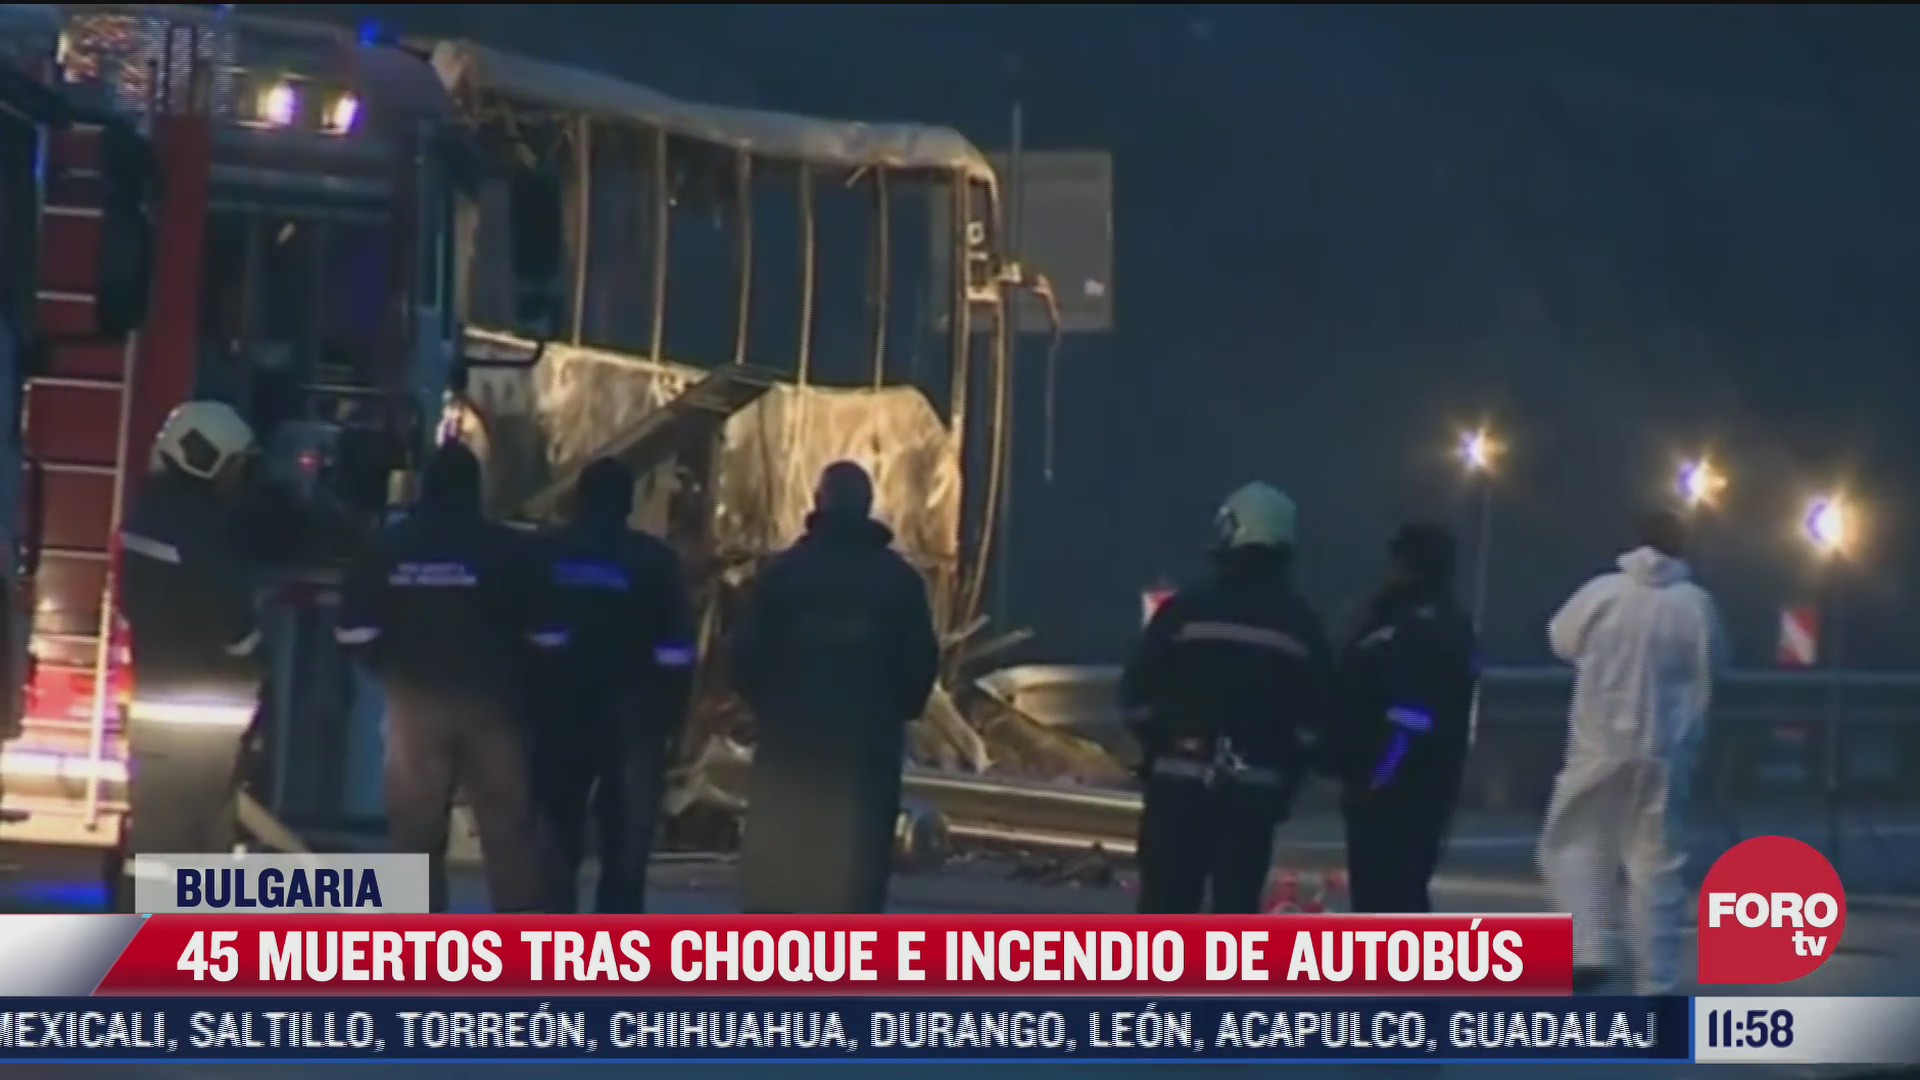 mueren calcinadas 45 personas al incendiarse un autobus en bulgaria